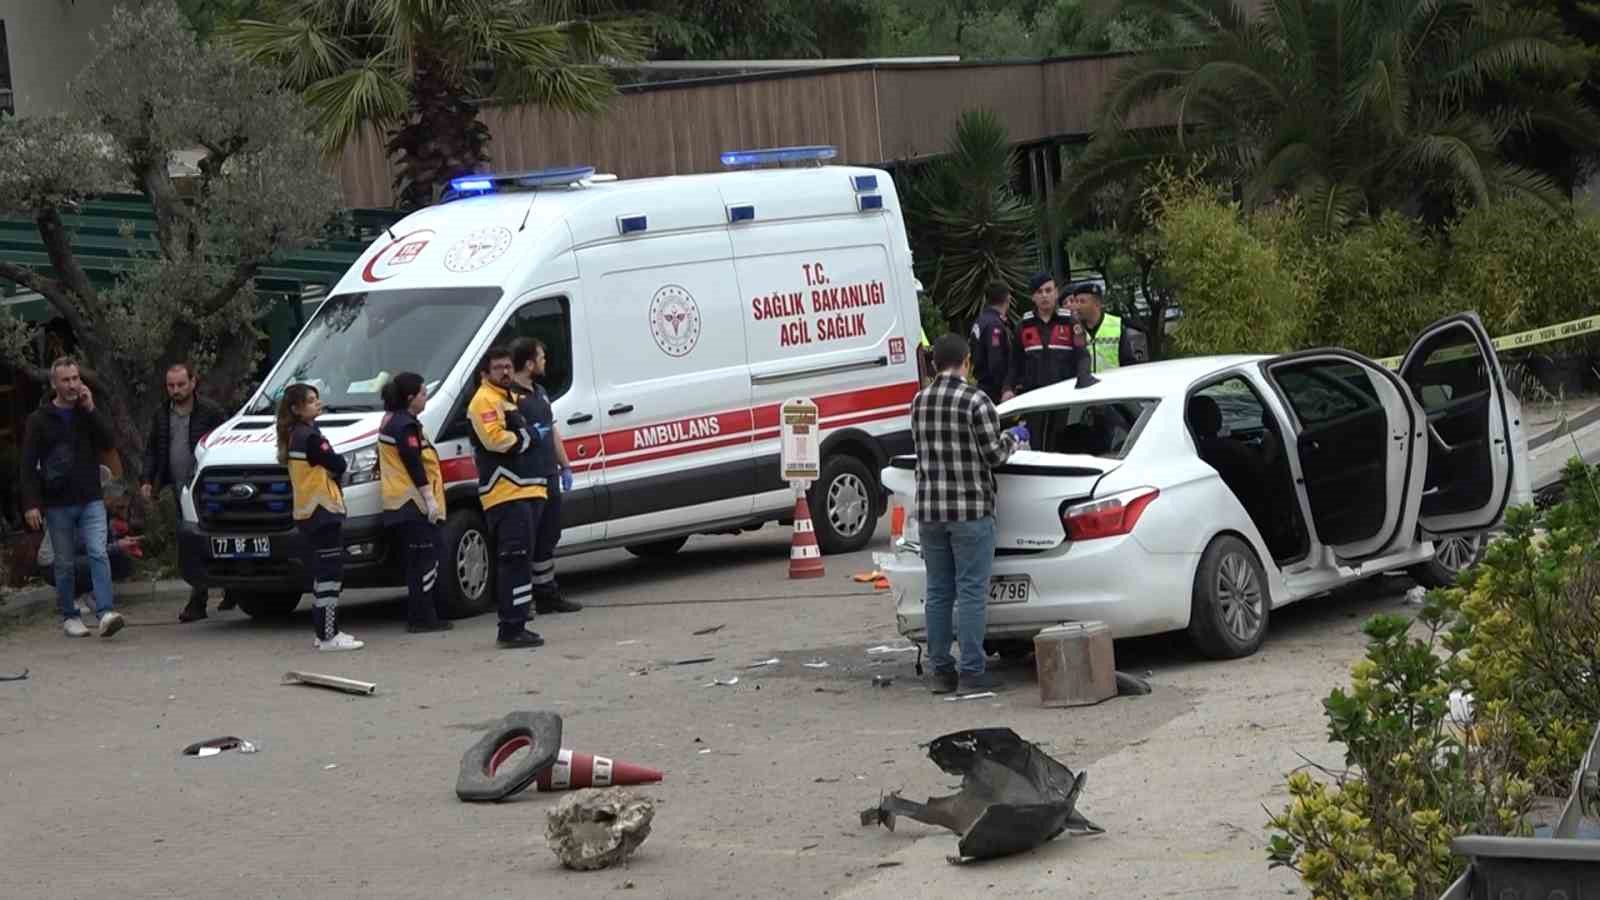 Yalova’da 1 kişinin öldüğü, 7 kişinin de yaralandığı kaza kamerada
